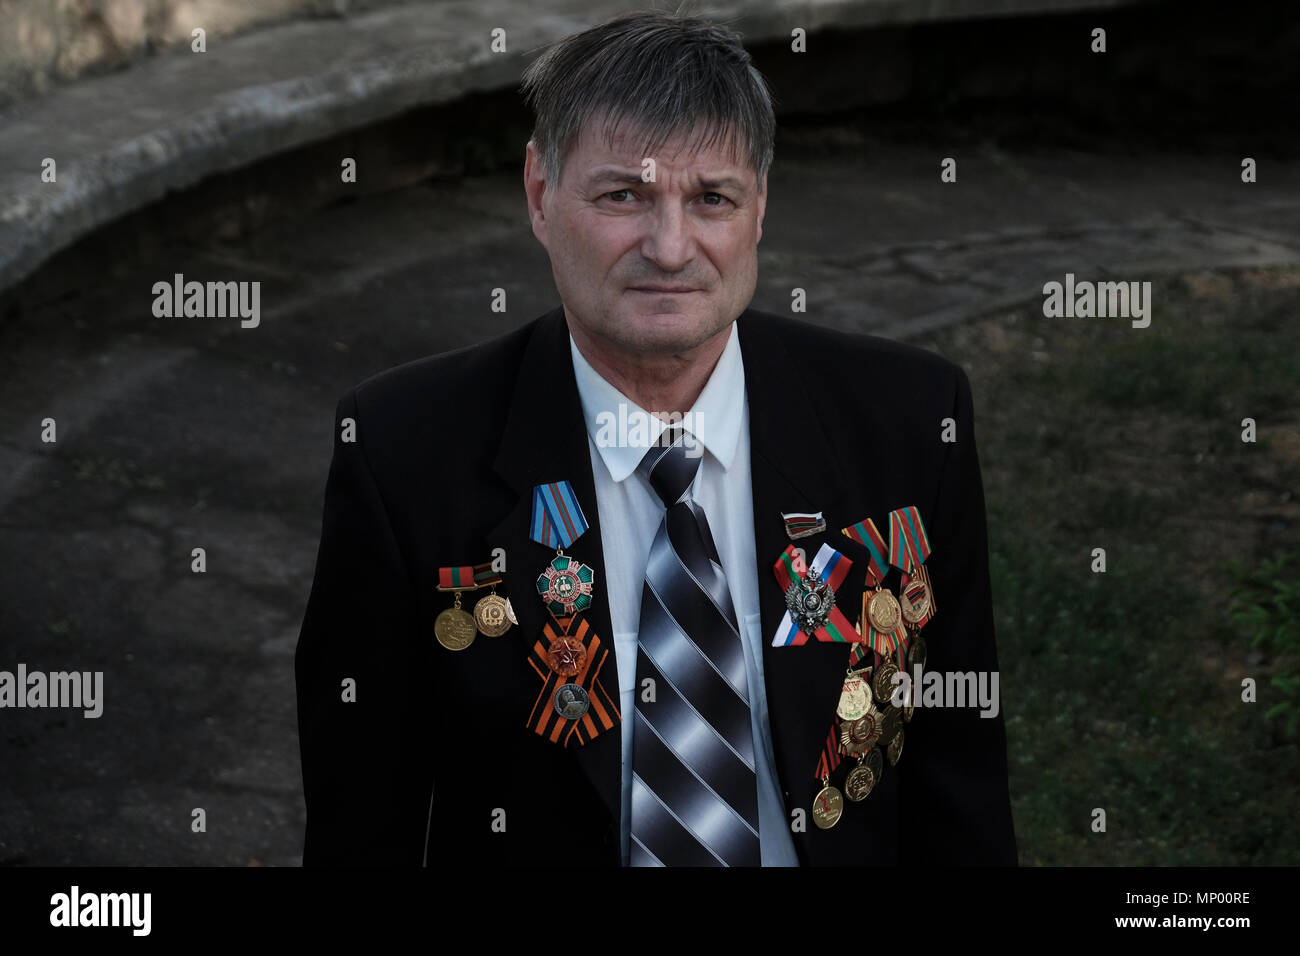 Ein transnistrischen Veteran mit Medaillen in seinem Anzug Mantel während der Tag des Sieges festgesteckt, die am 9. Mai, der den Sieg der Sowjetunion über Nazi-deutschland gedenkt im Zentrum von Tiraspol die Hauptstadt und das Verwaltungszentrum der international anerkannten Grenzen der Republik Moldau unter der De-facto-Kontrolle der unerkannte Pridnestrovian Moldauischen Republik auch als Transnistrien (PMR) seit 1992. Stockfoto